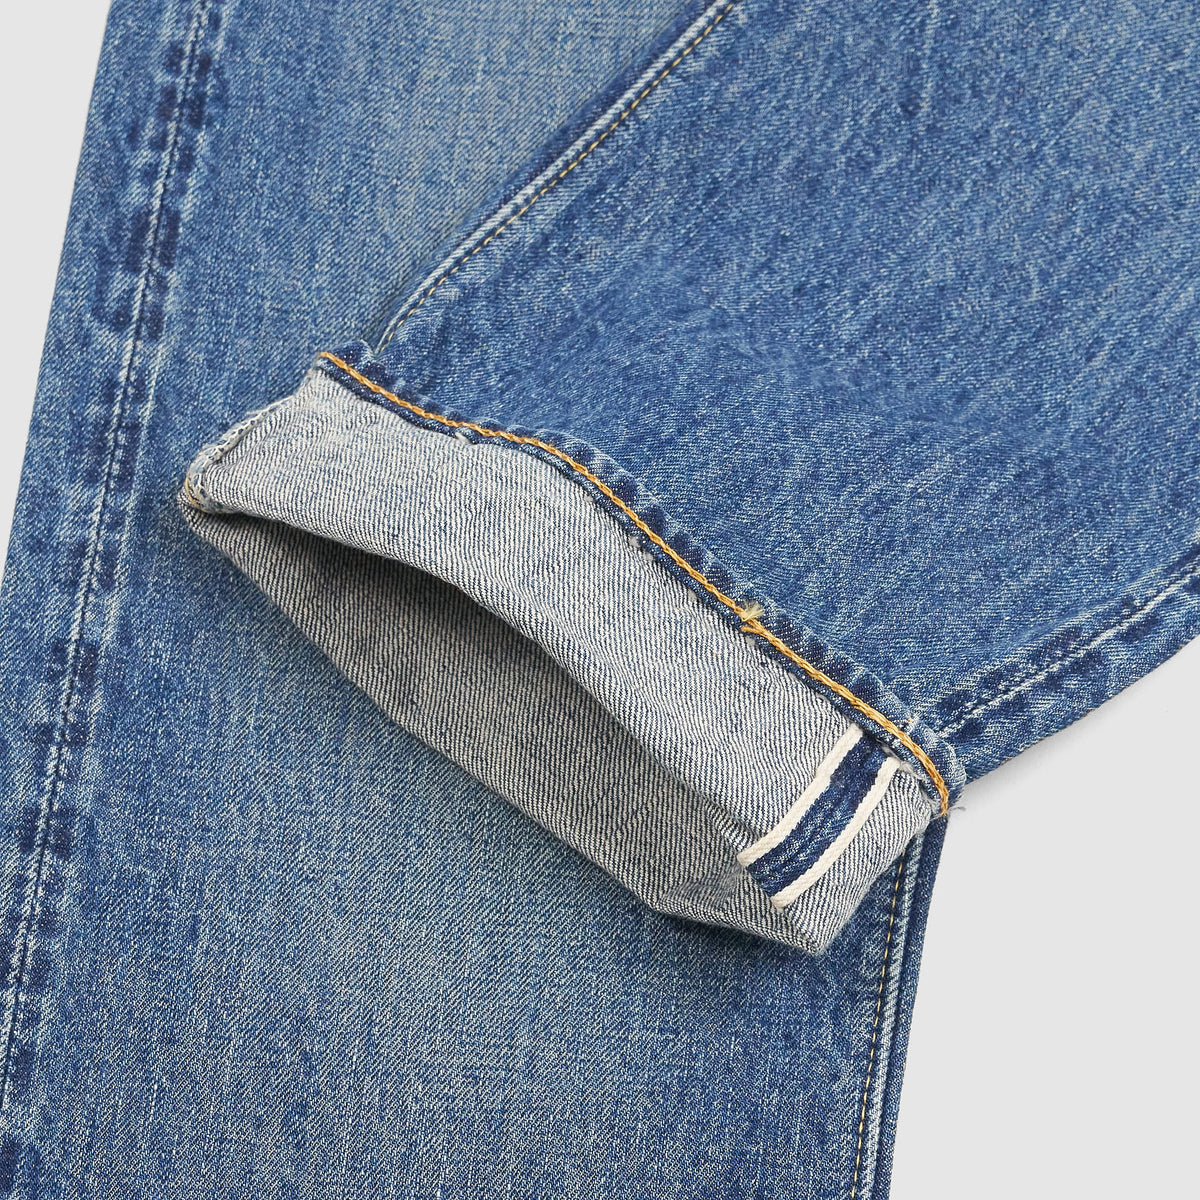 OrSlow 107 Denim 5 Pocket Selvage Jeans